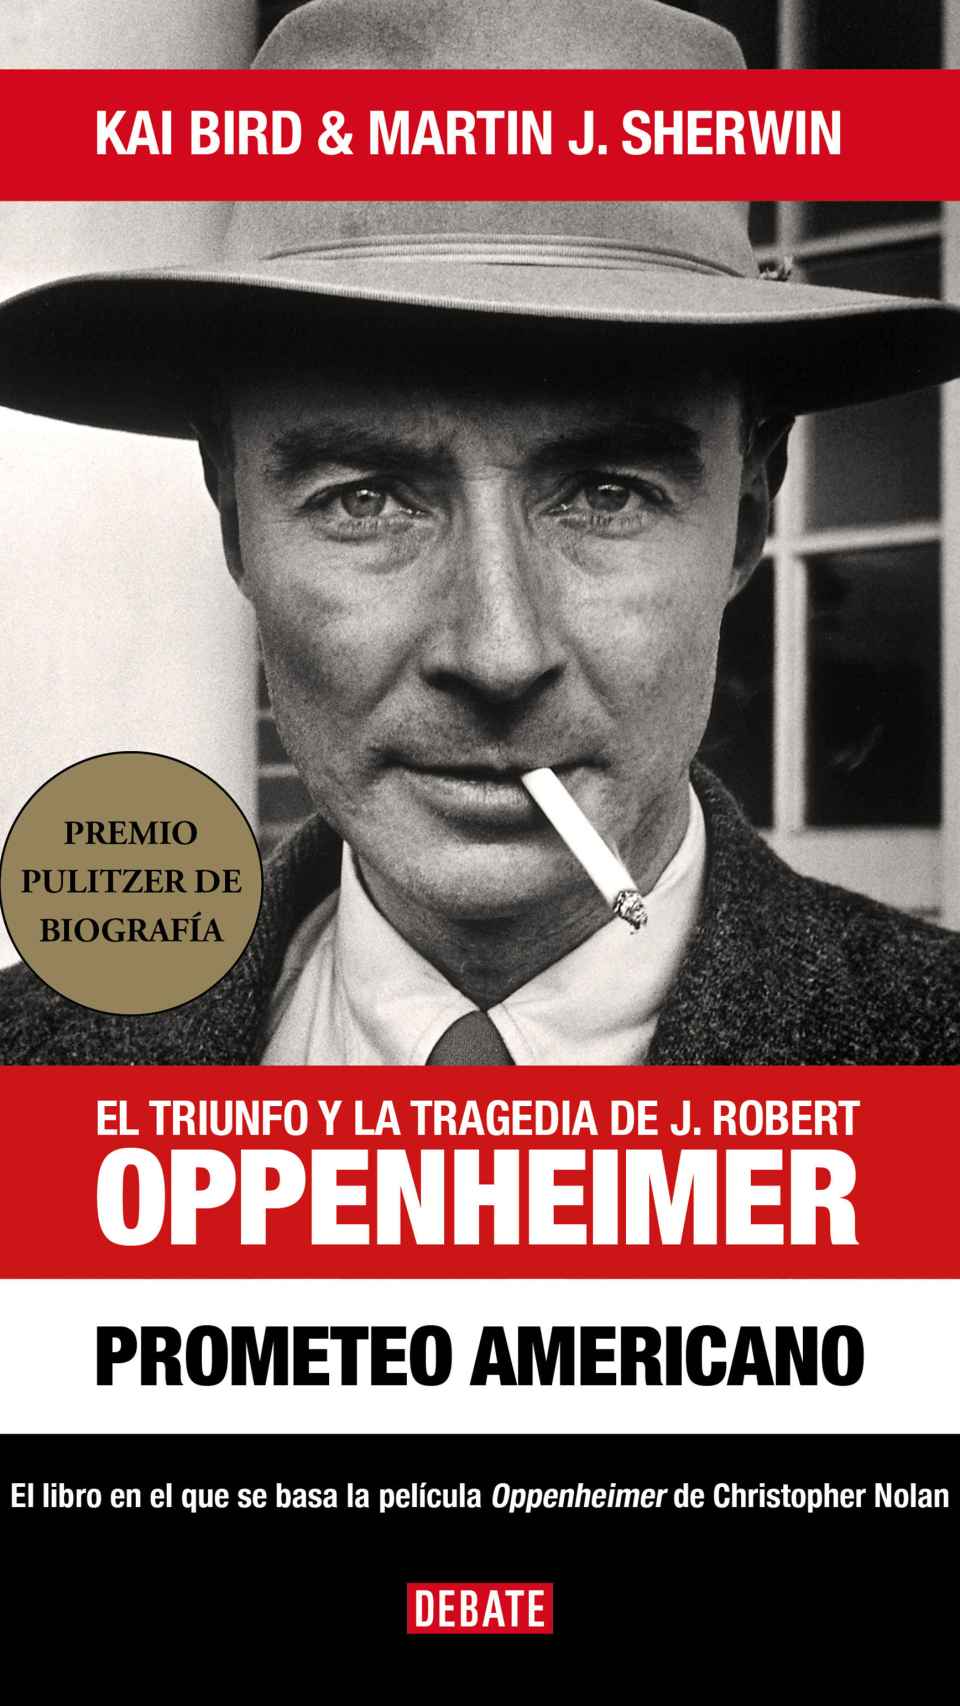 Portada de la biografía de Oppenheimer